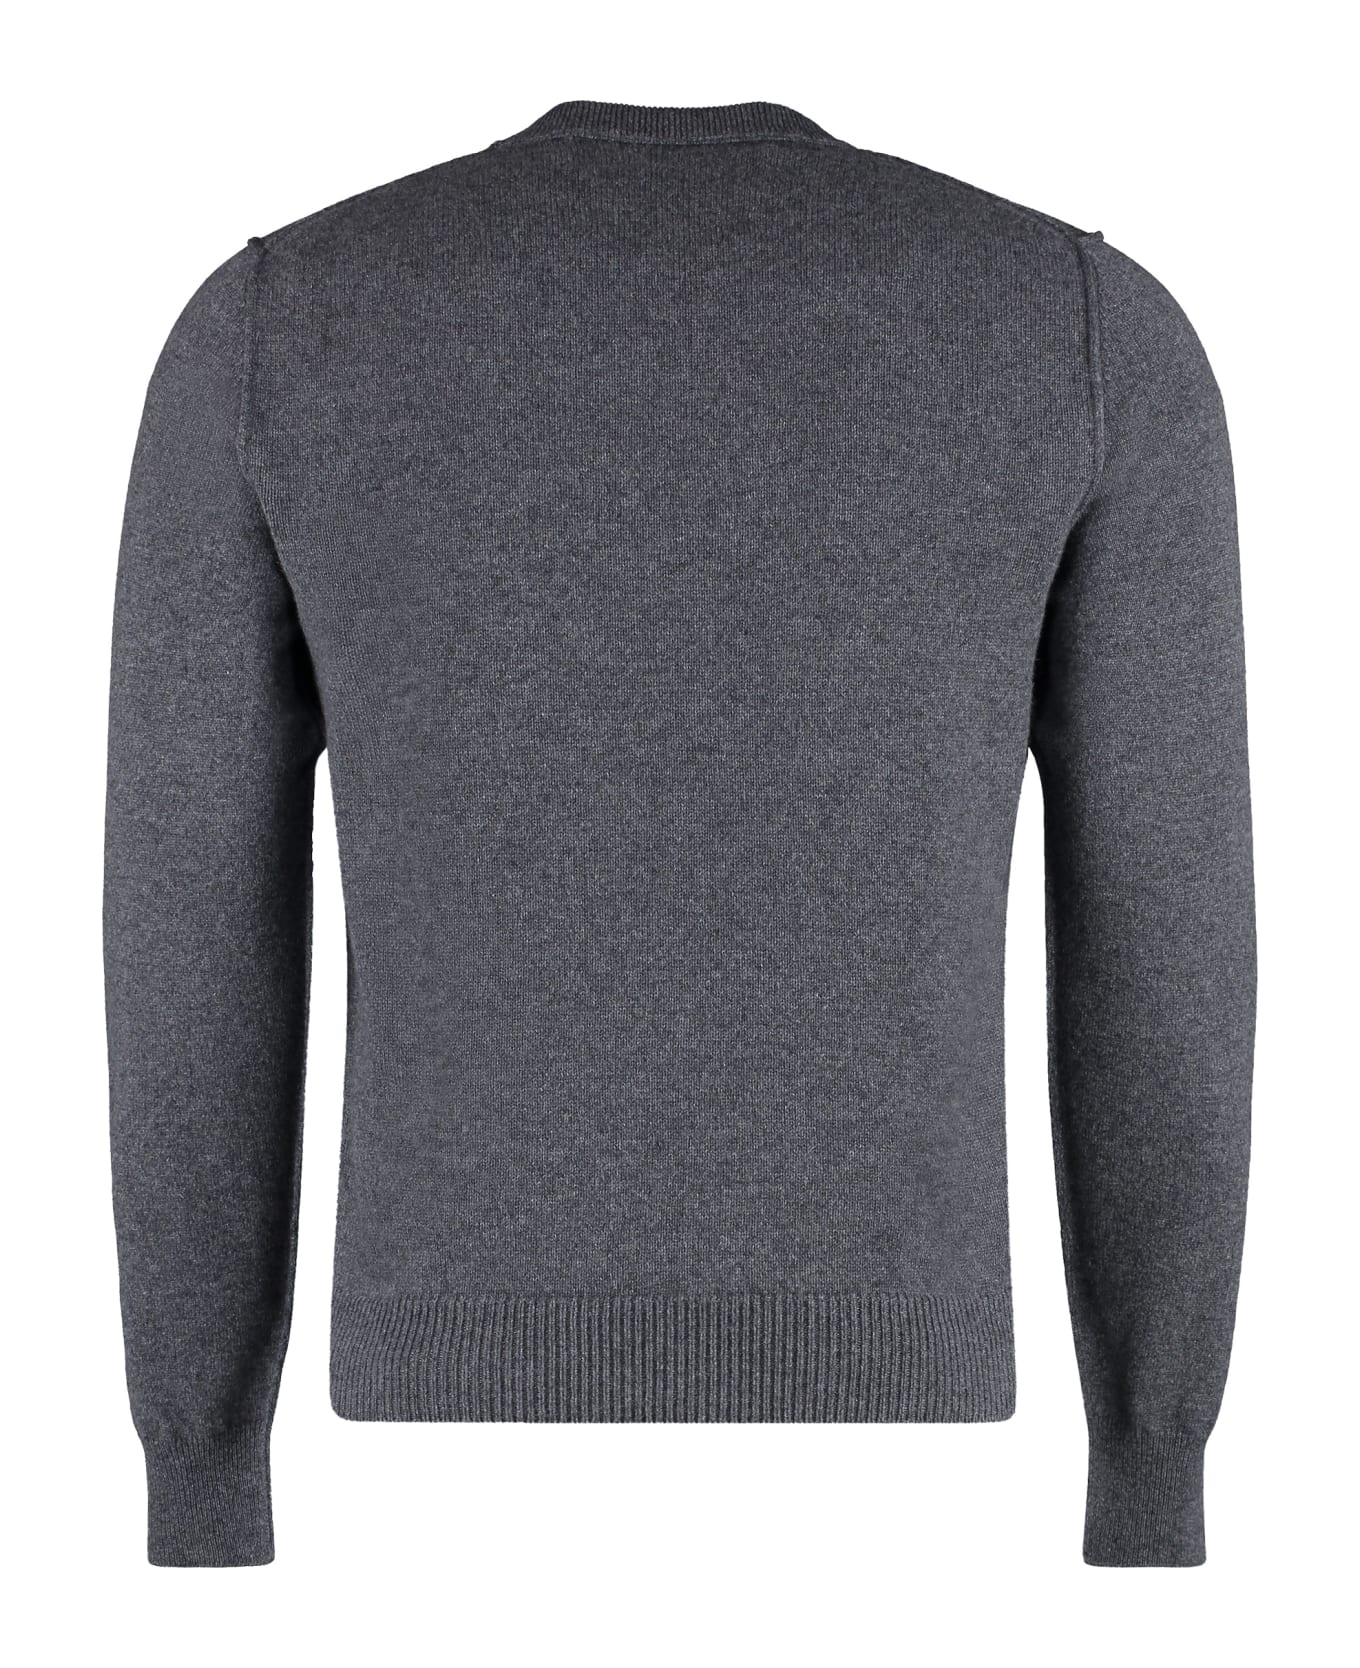 Maison Margiela Cashmere Sweater - grey